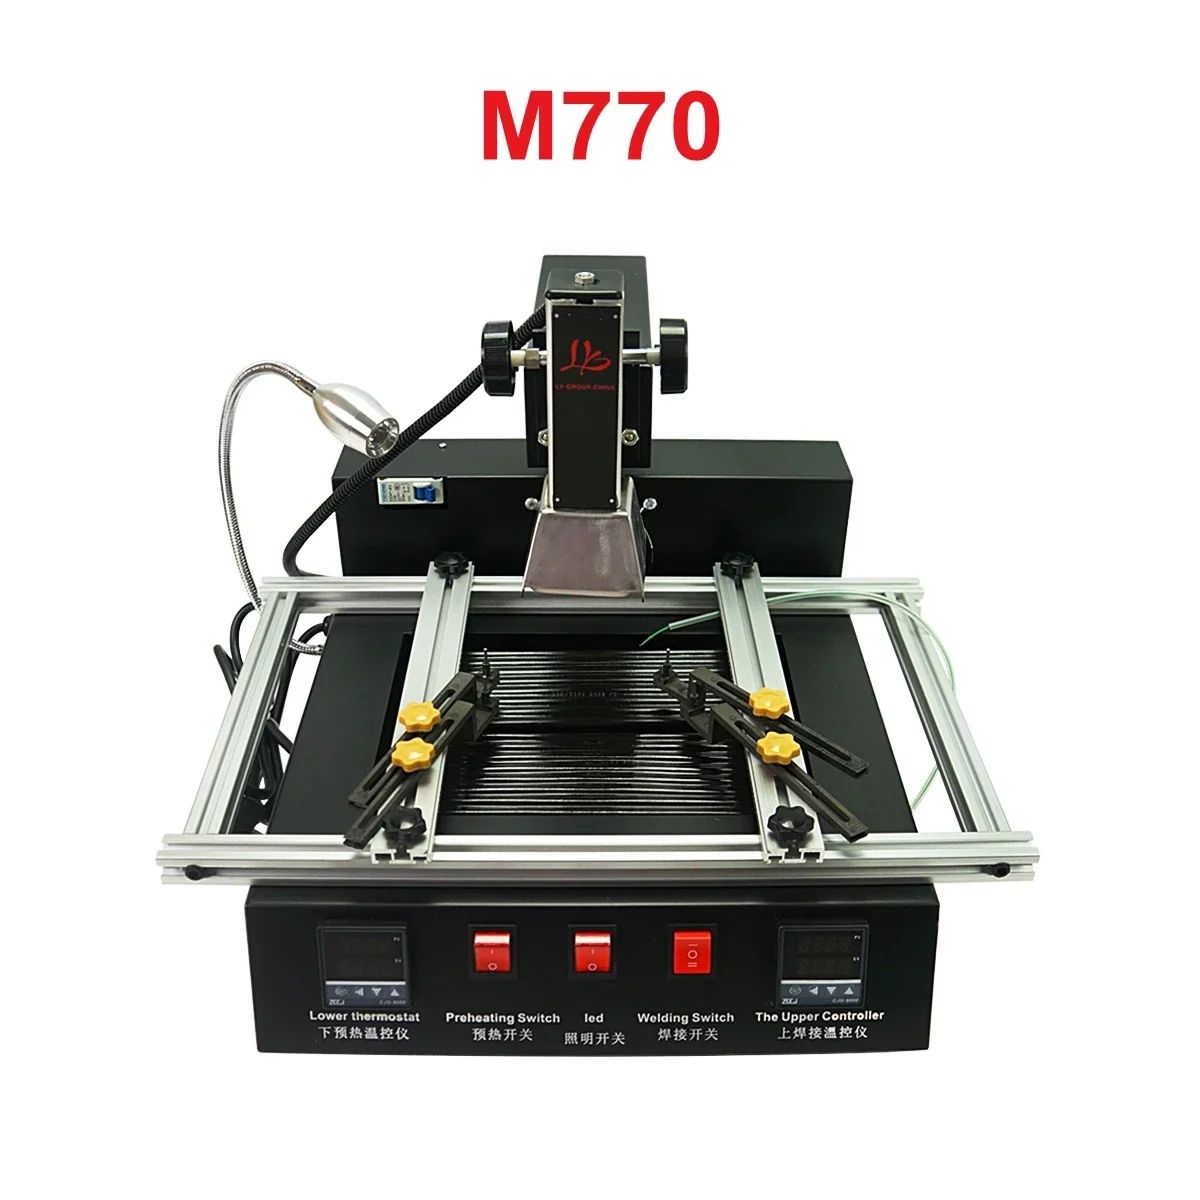 M770